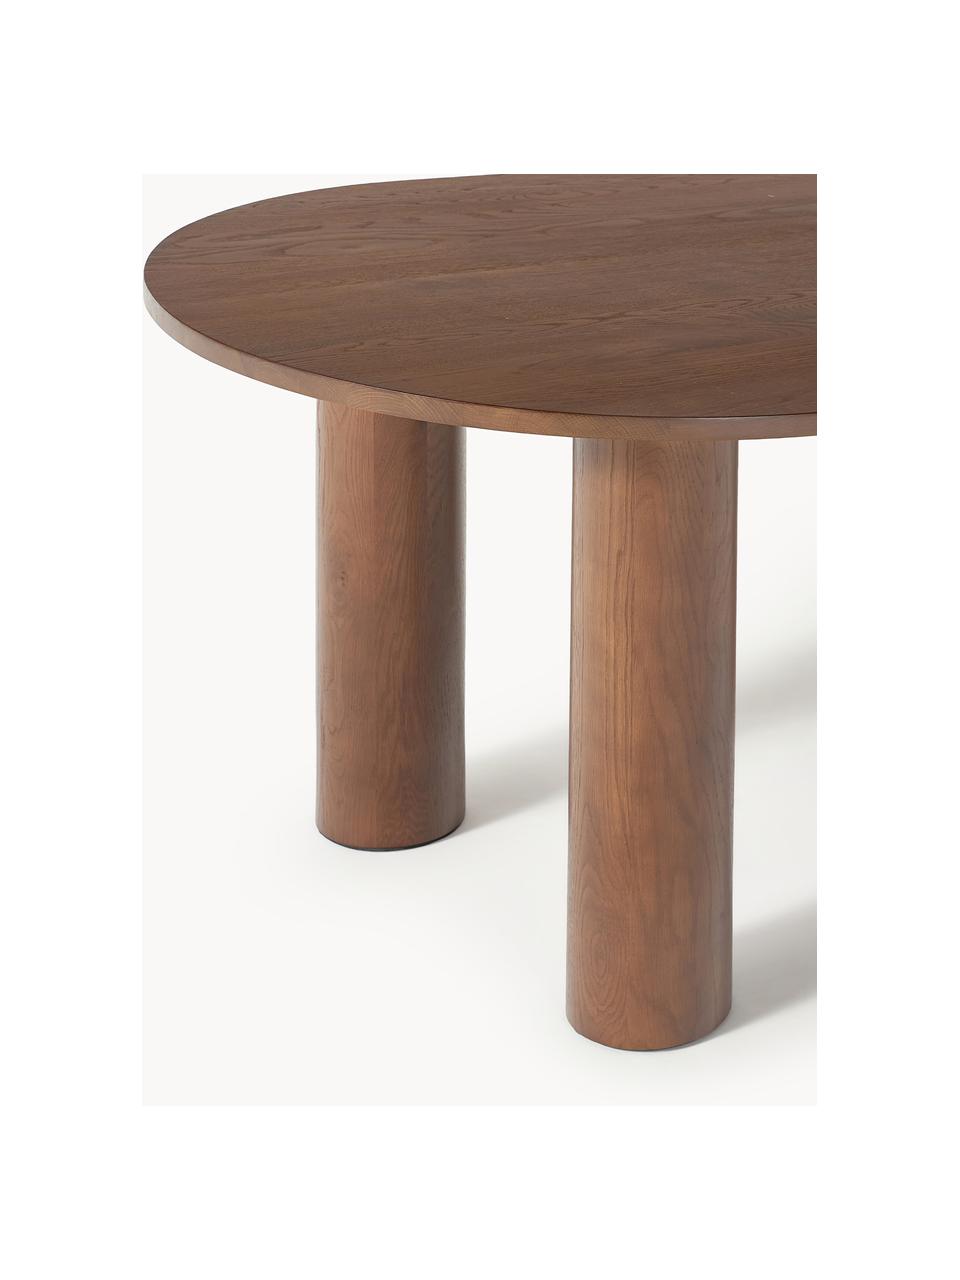 Oválny jedálenský stôl Dunia, 180 x 110 cm, Masívne dubové drevo, ošetrené olejom
Tento produkt je vyrobený z trvalo udržateľného dreva s certifikátom FSC®., Dubové drevo, hnedá ošetrené olejom, Š 180 x H 110 cm